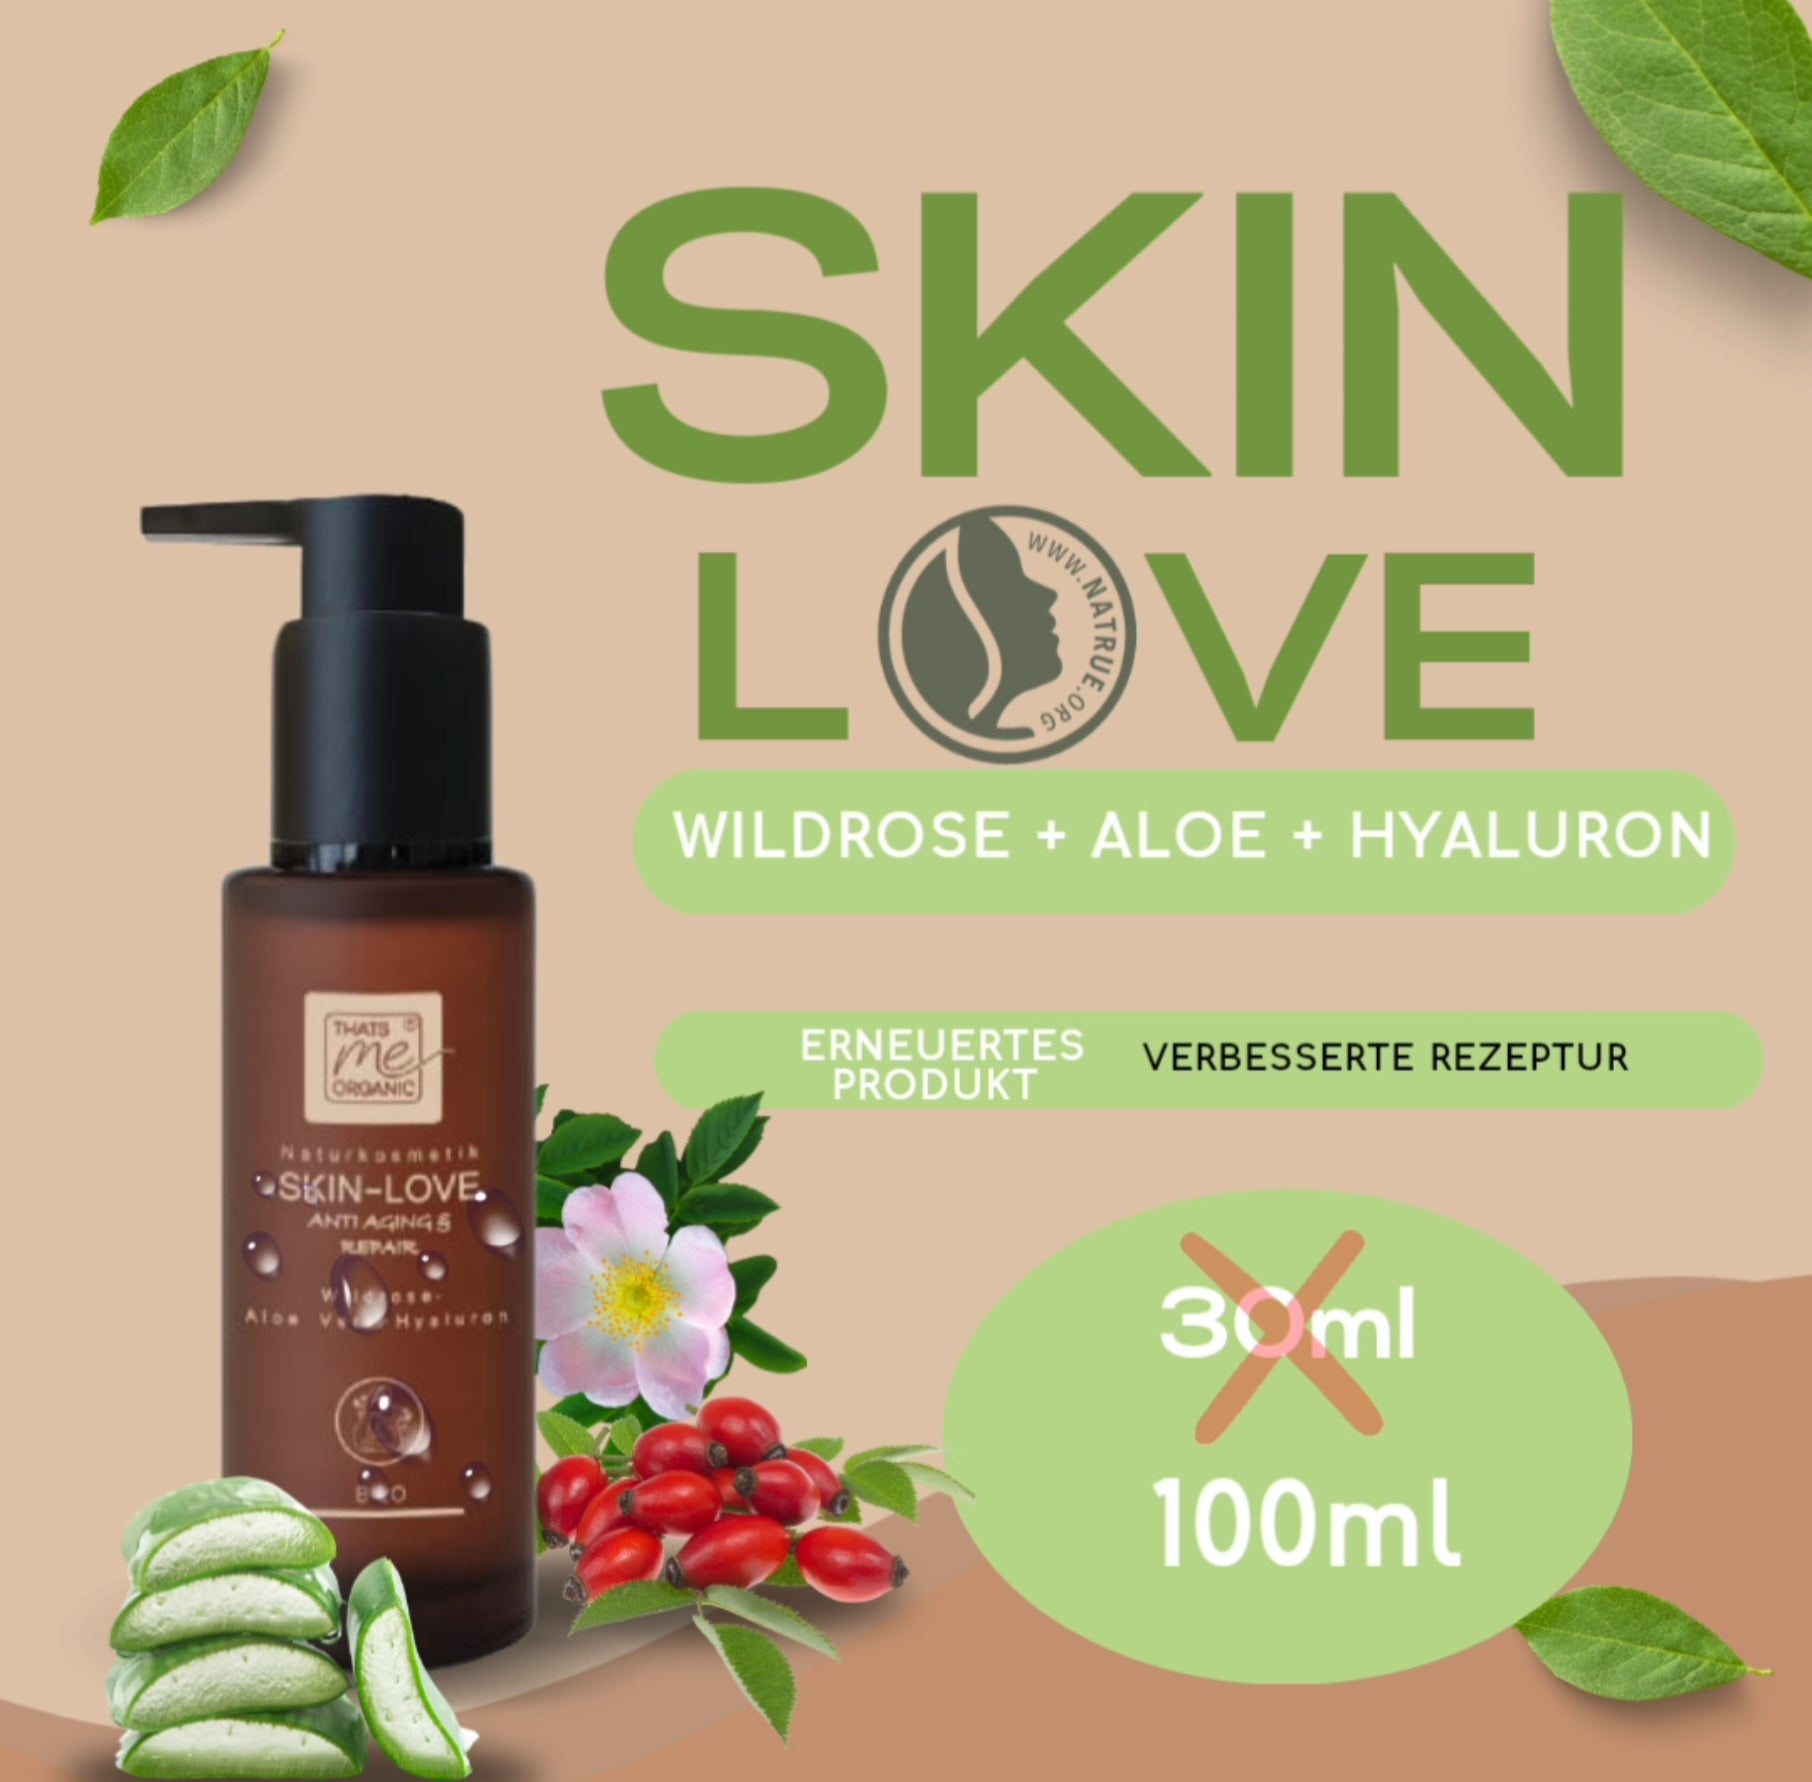 NEU: SKIN-LOVE - Wildrose-Aloe Vera-Hyaluron Bio-Naturkosmetik 100ml